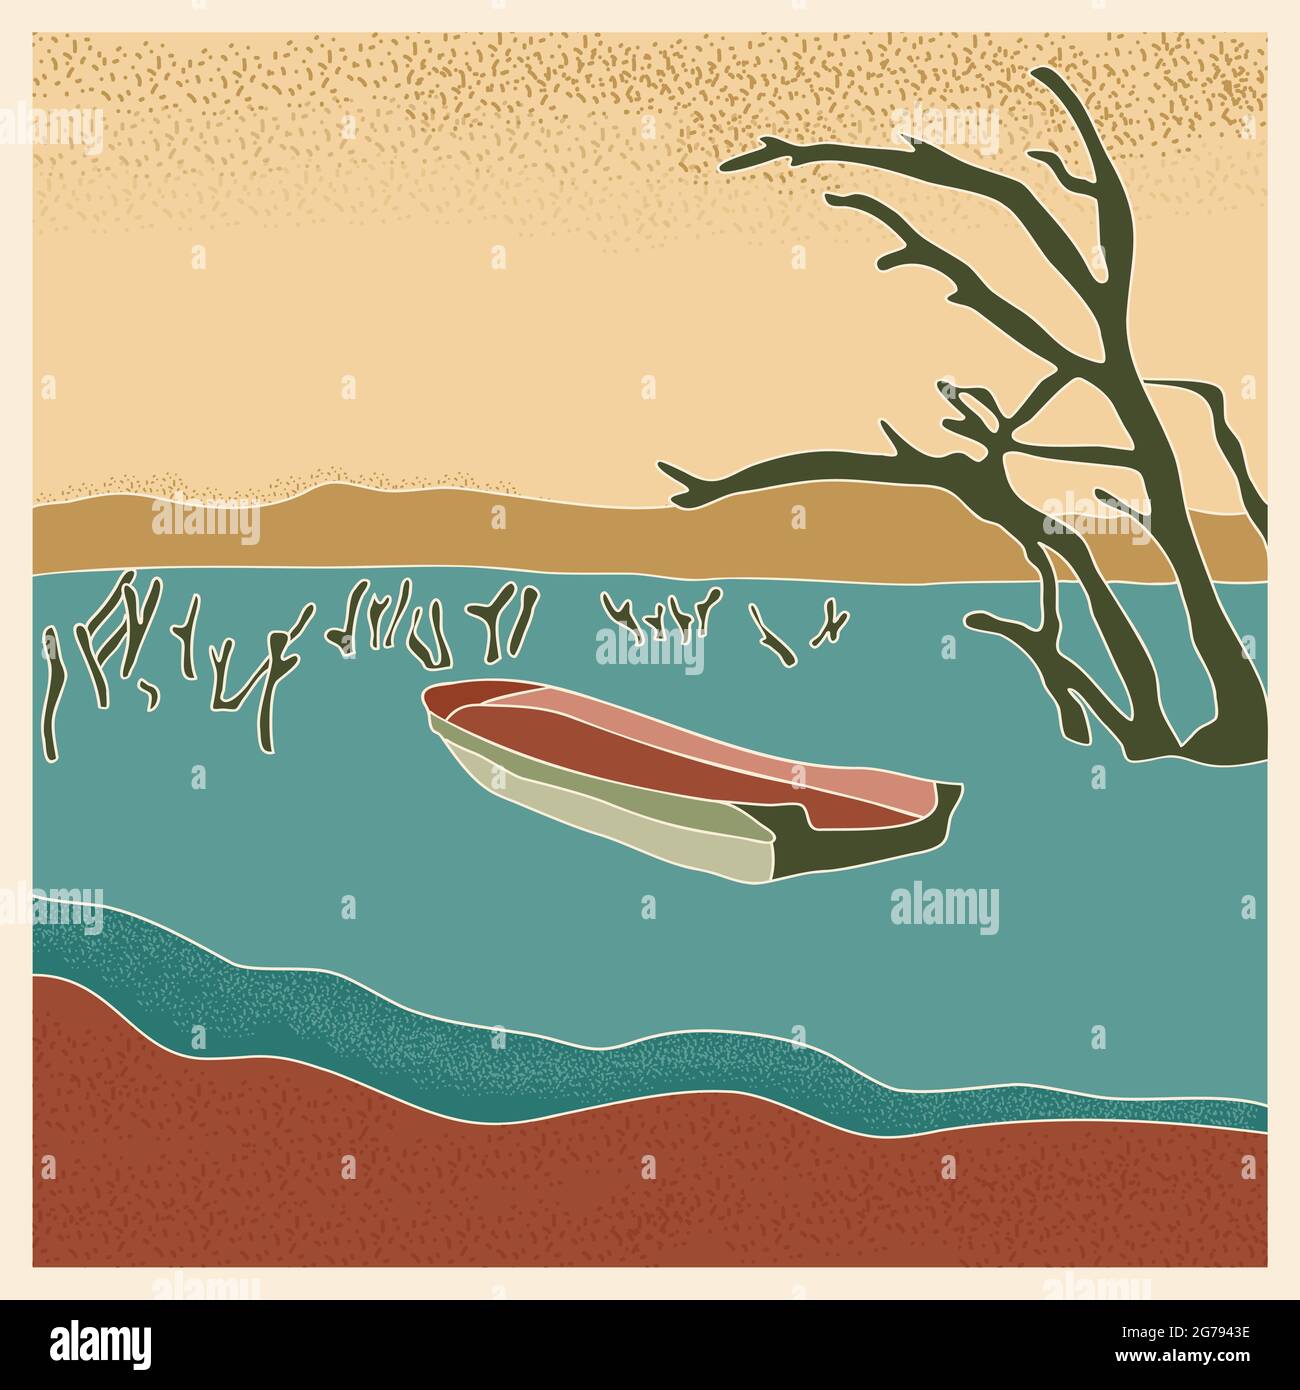 Abstraktes Retro-Landschafts-Poster. Stilisiertes Boot im See mit trockenen Baumstämmen, Berge am Horizont Vektordarstellung mit Geräuschen Stock Vektor